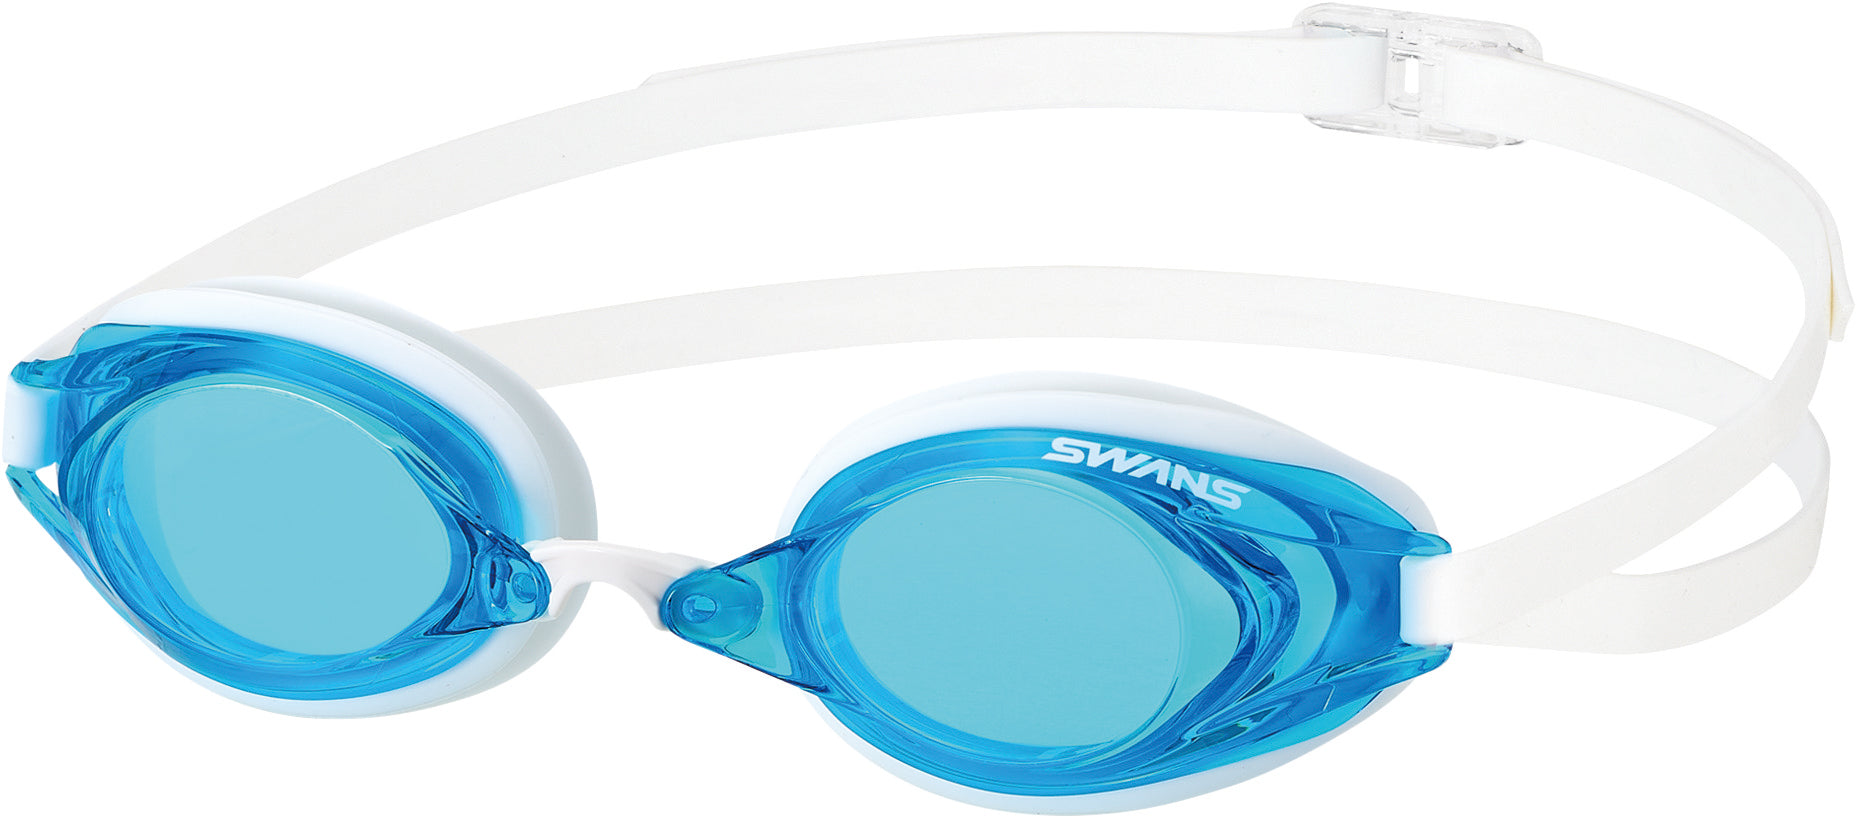 SR2 Goggles White/Sky Blue